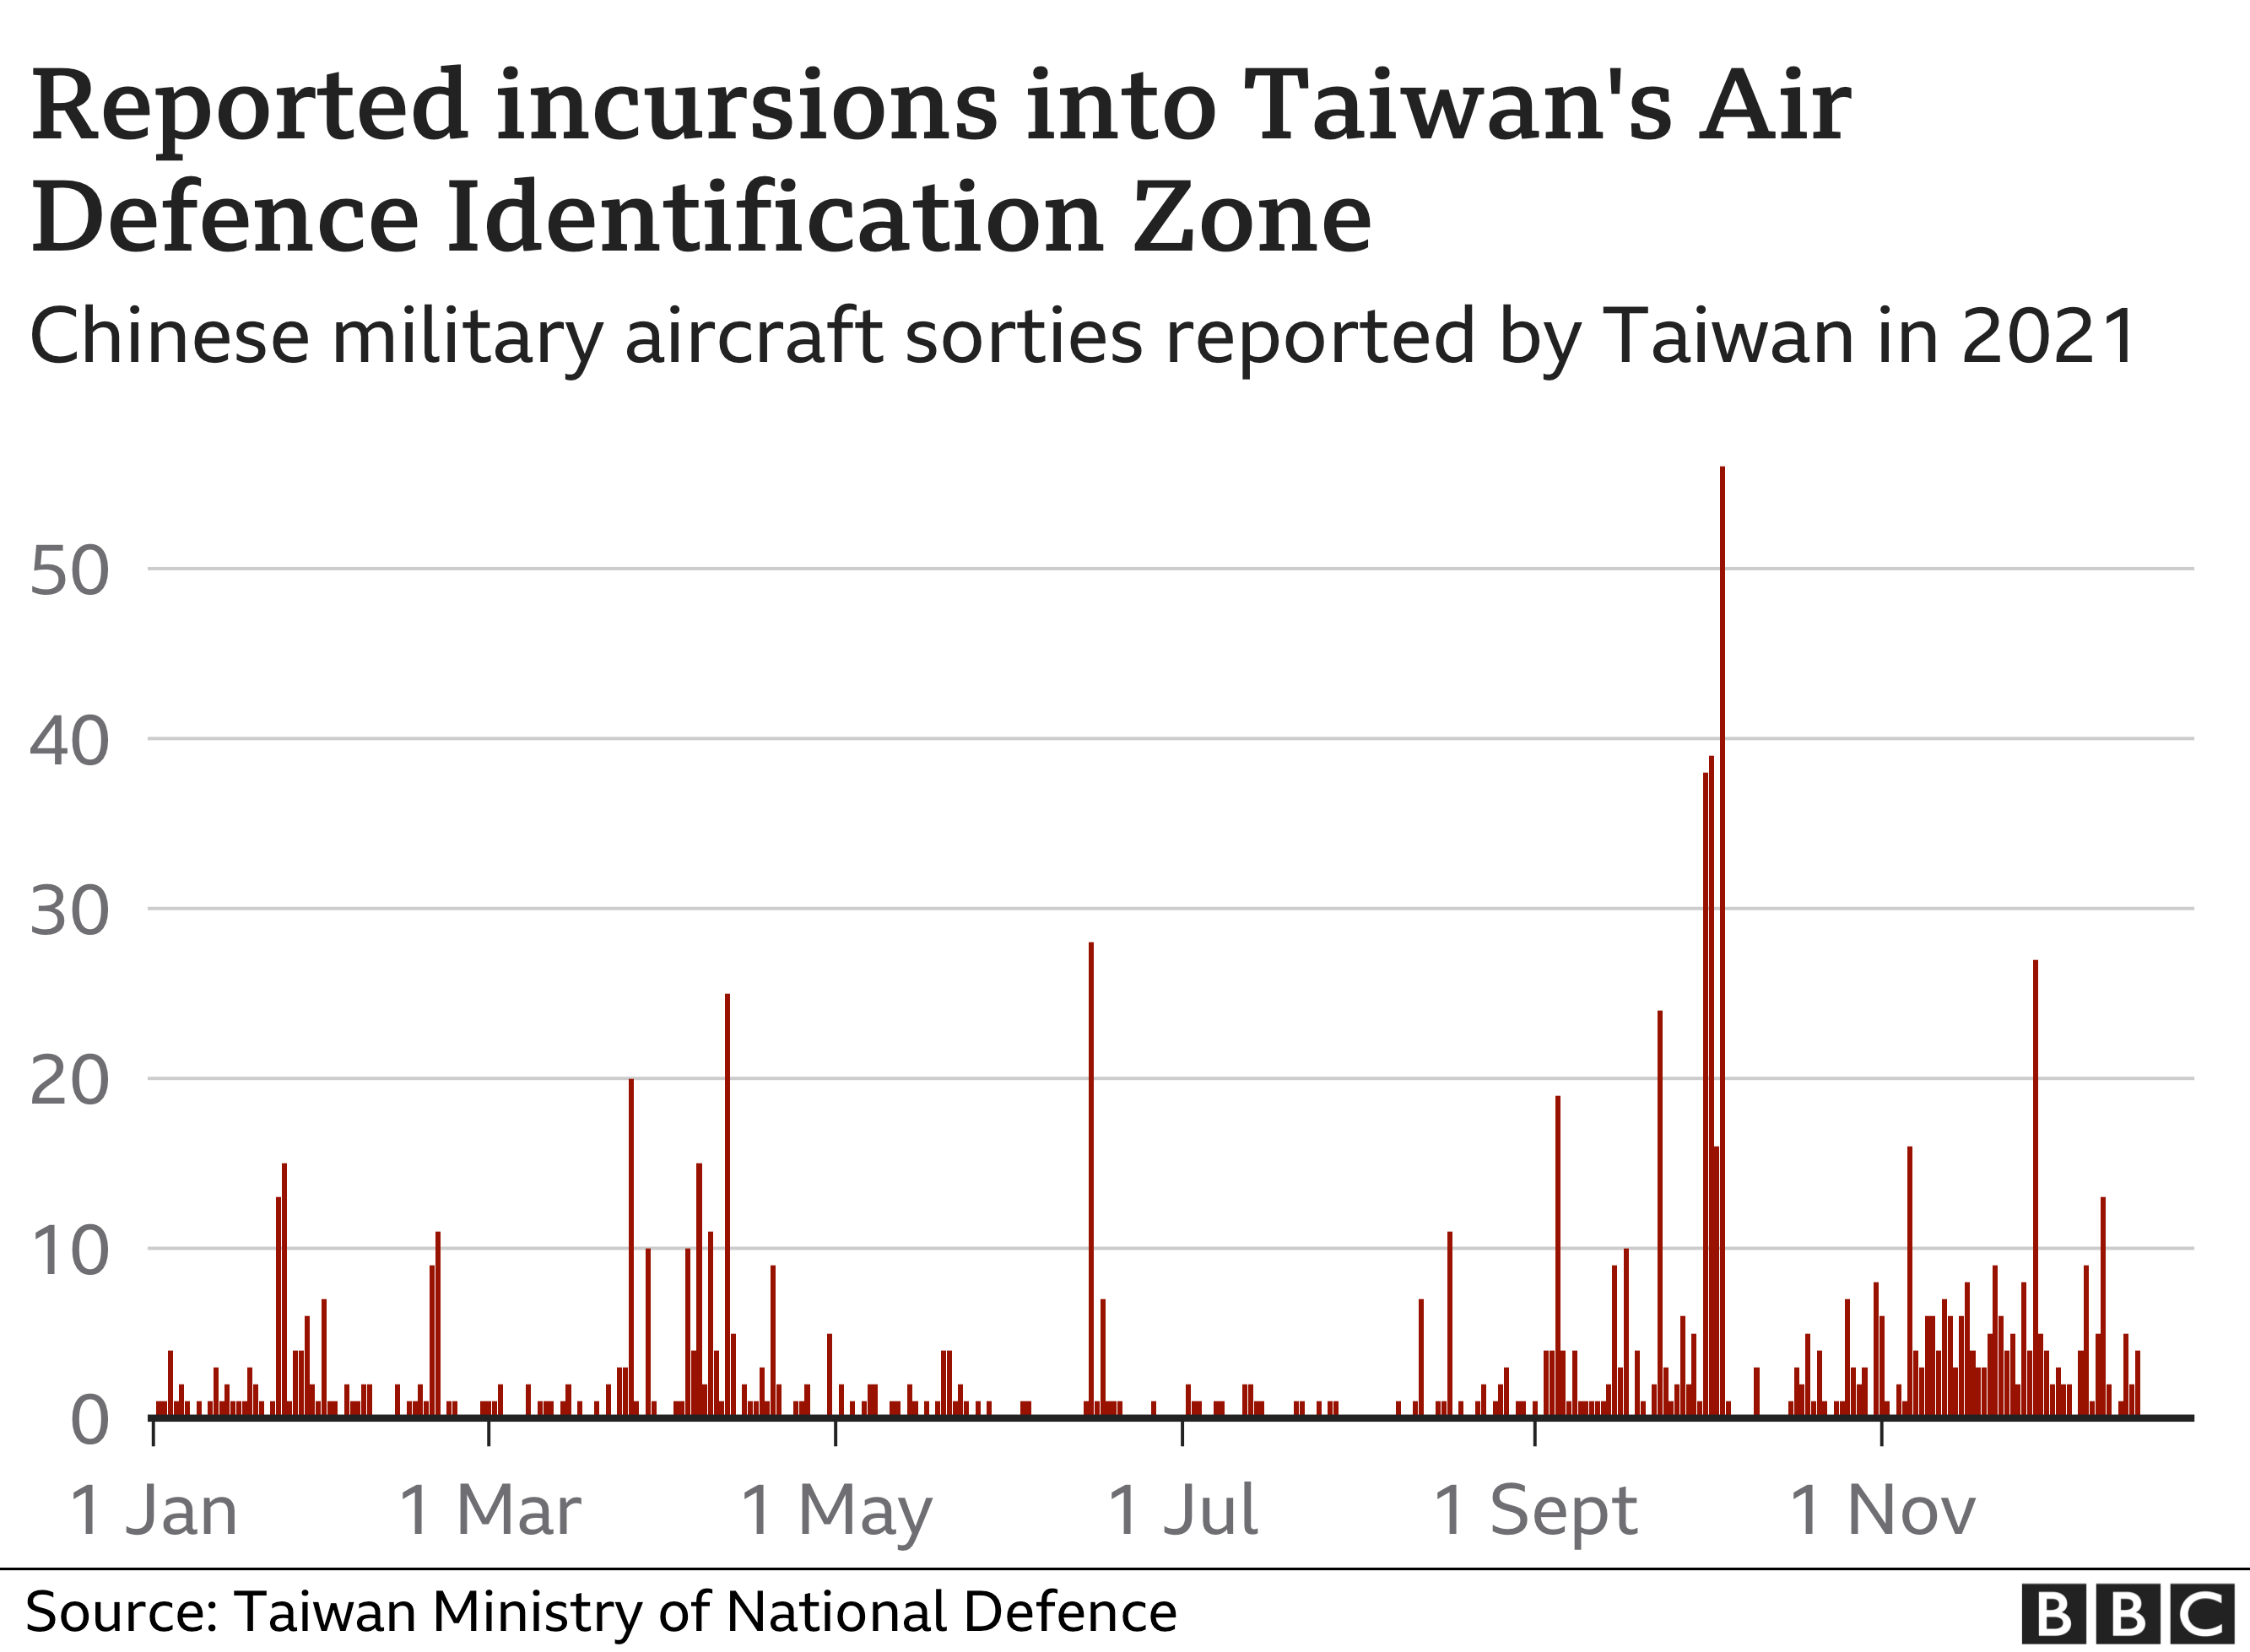 Графика, показывающая сообщения о вторжениях в идентификационную зону ПВО Тайваня в 2021 году